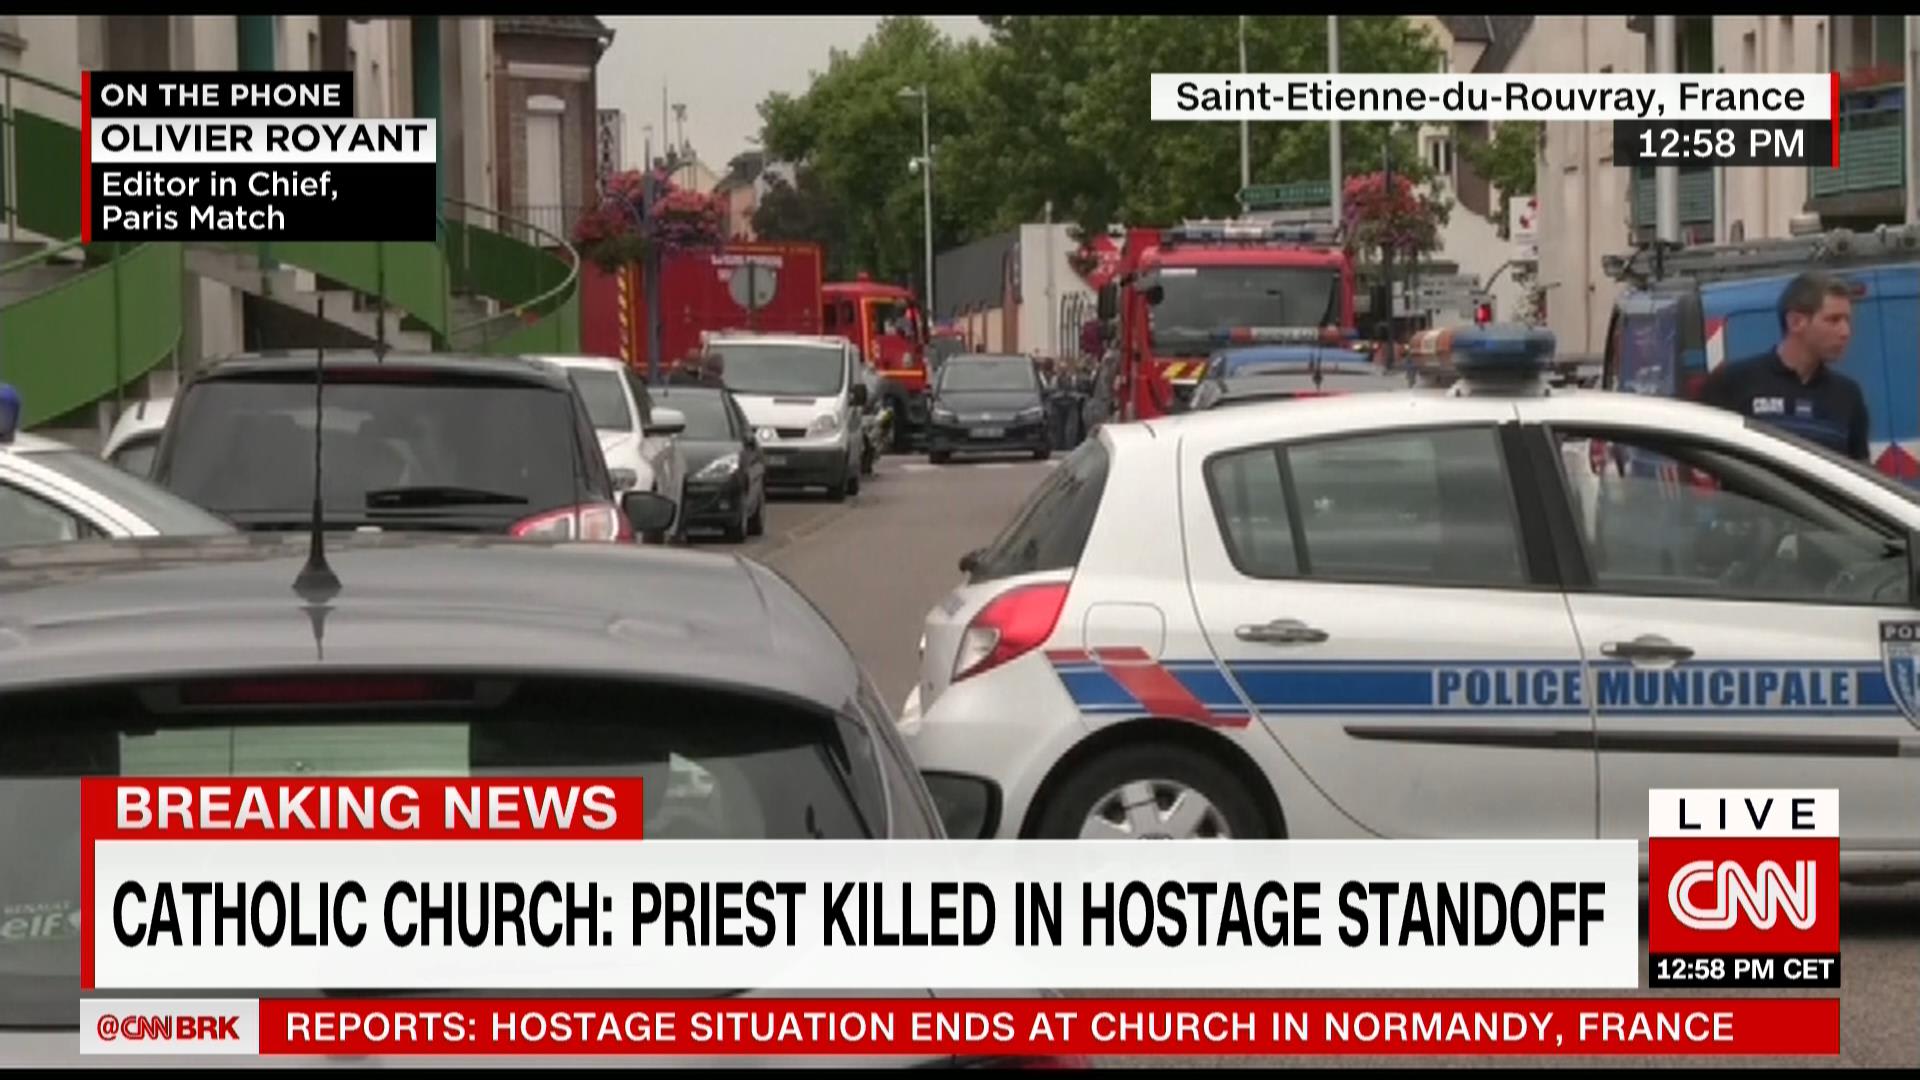 فرنسا: انتهاء عملية احتجاز مسلحين اثنين لقسيس وراهبتين ومدنيين في كنيسة.. والأبرشية تؤكد مقتل القسيس